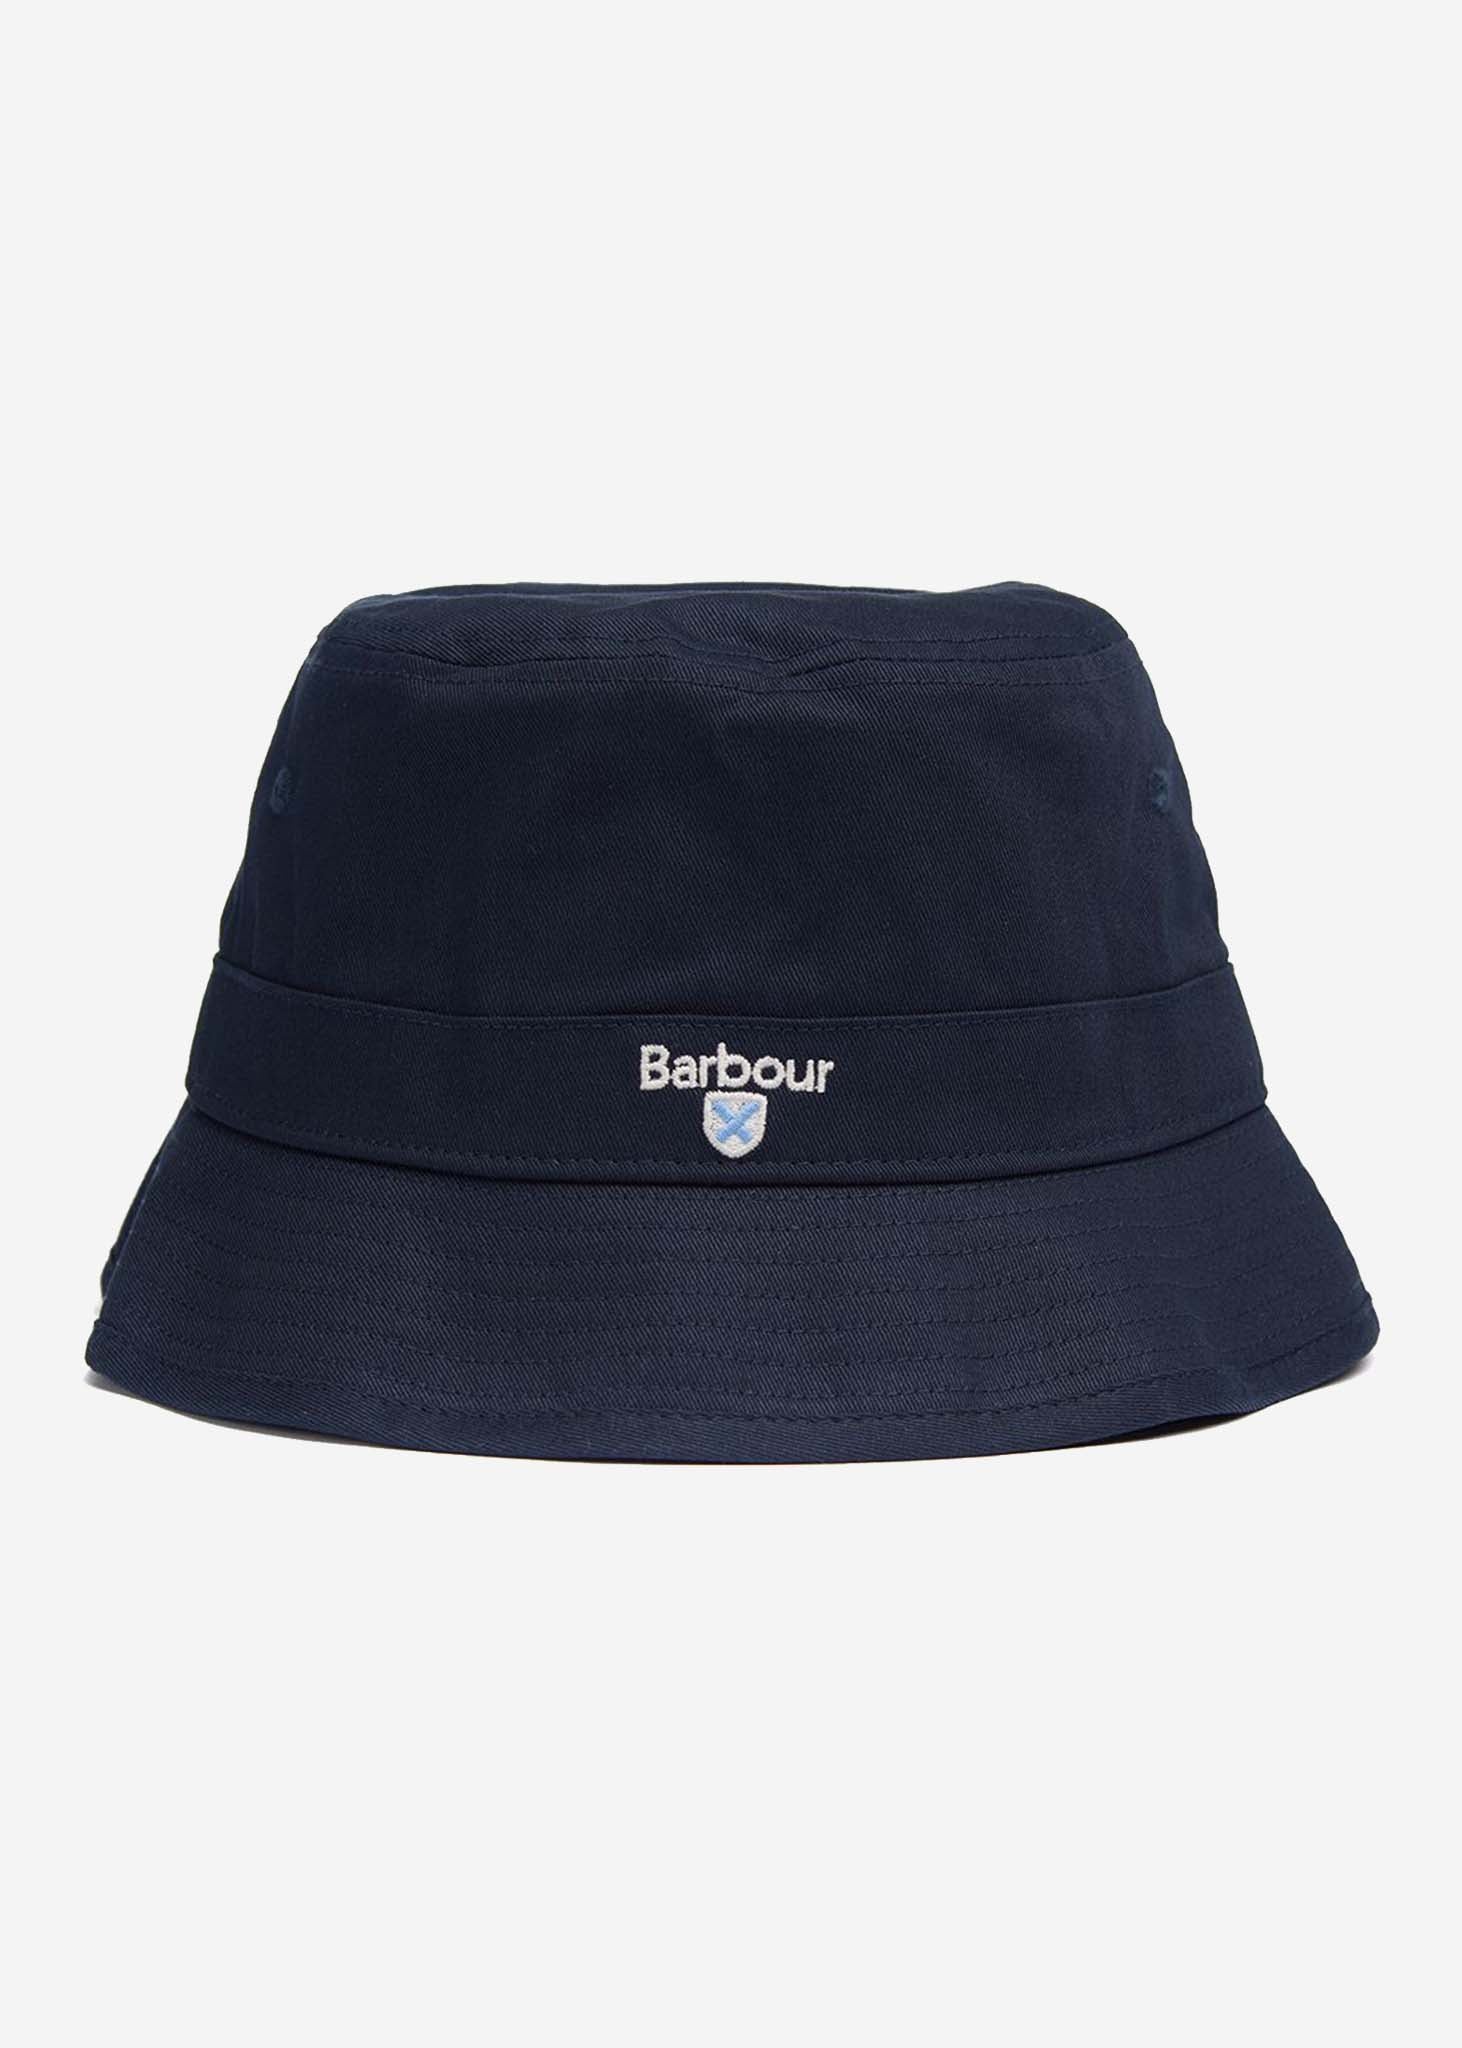 barbour bucket hat navy